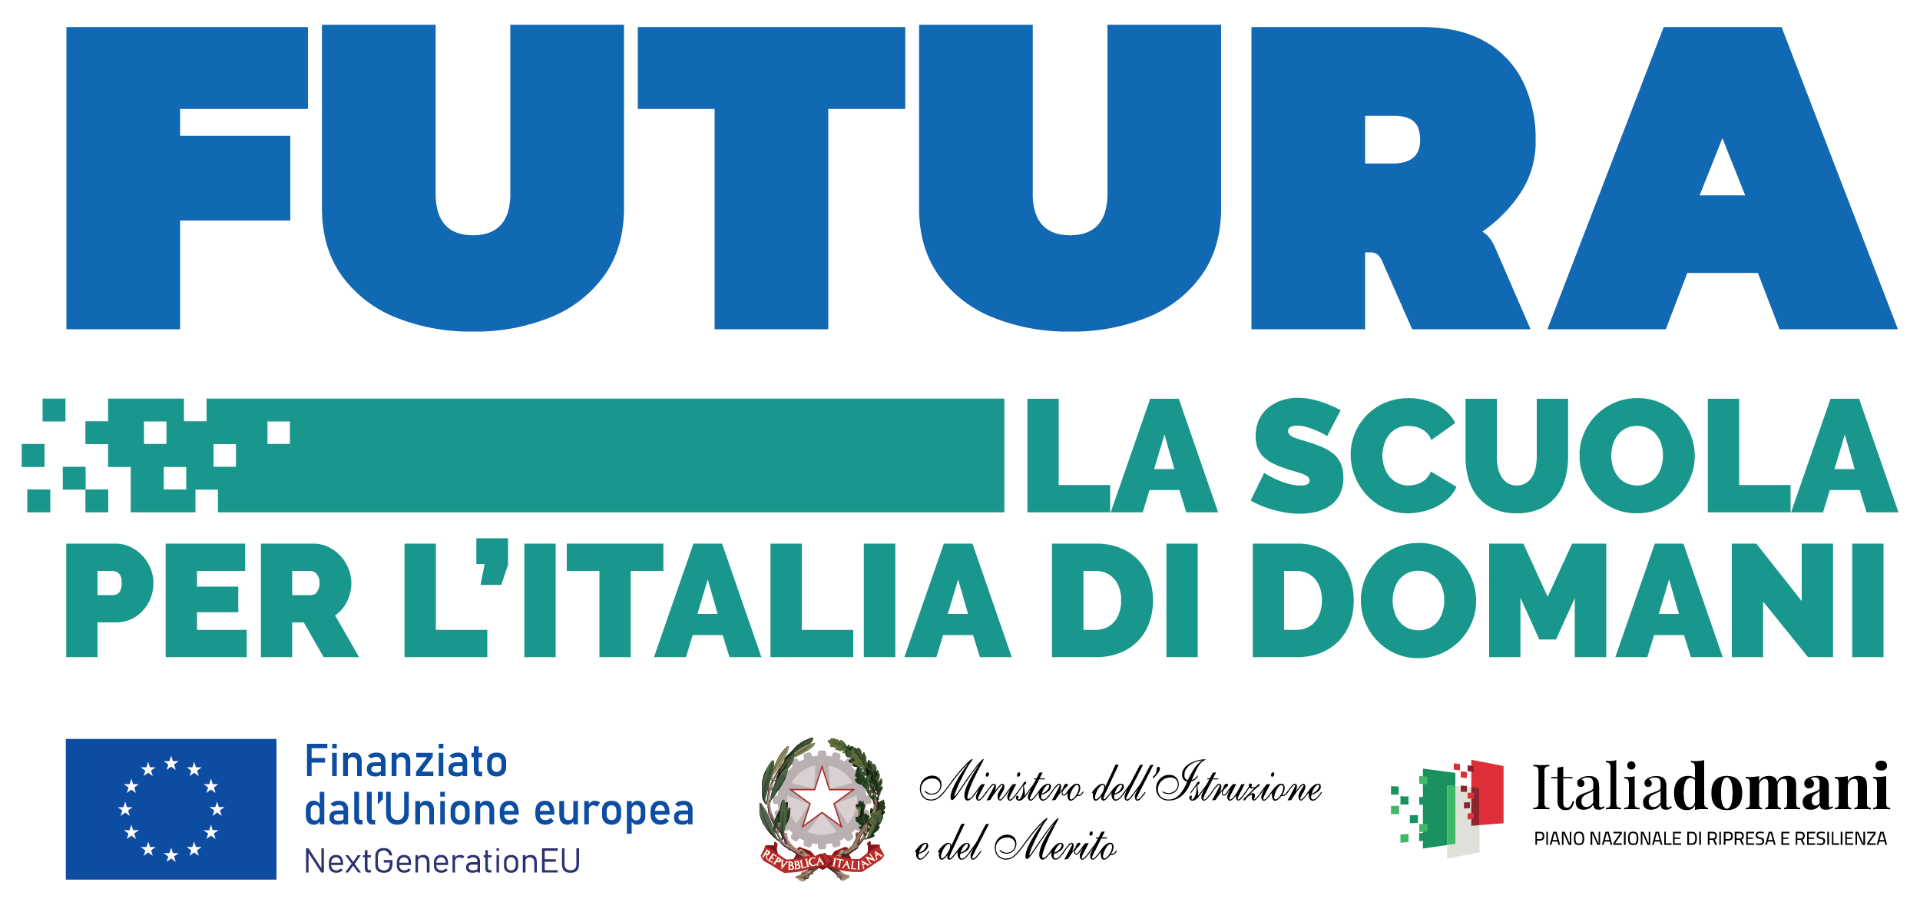 Futura, la scuola per l'Italia di domani